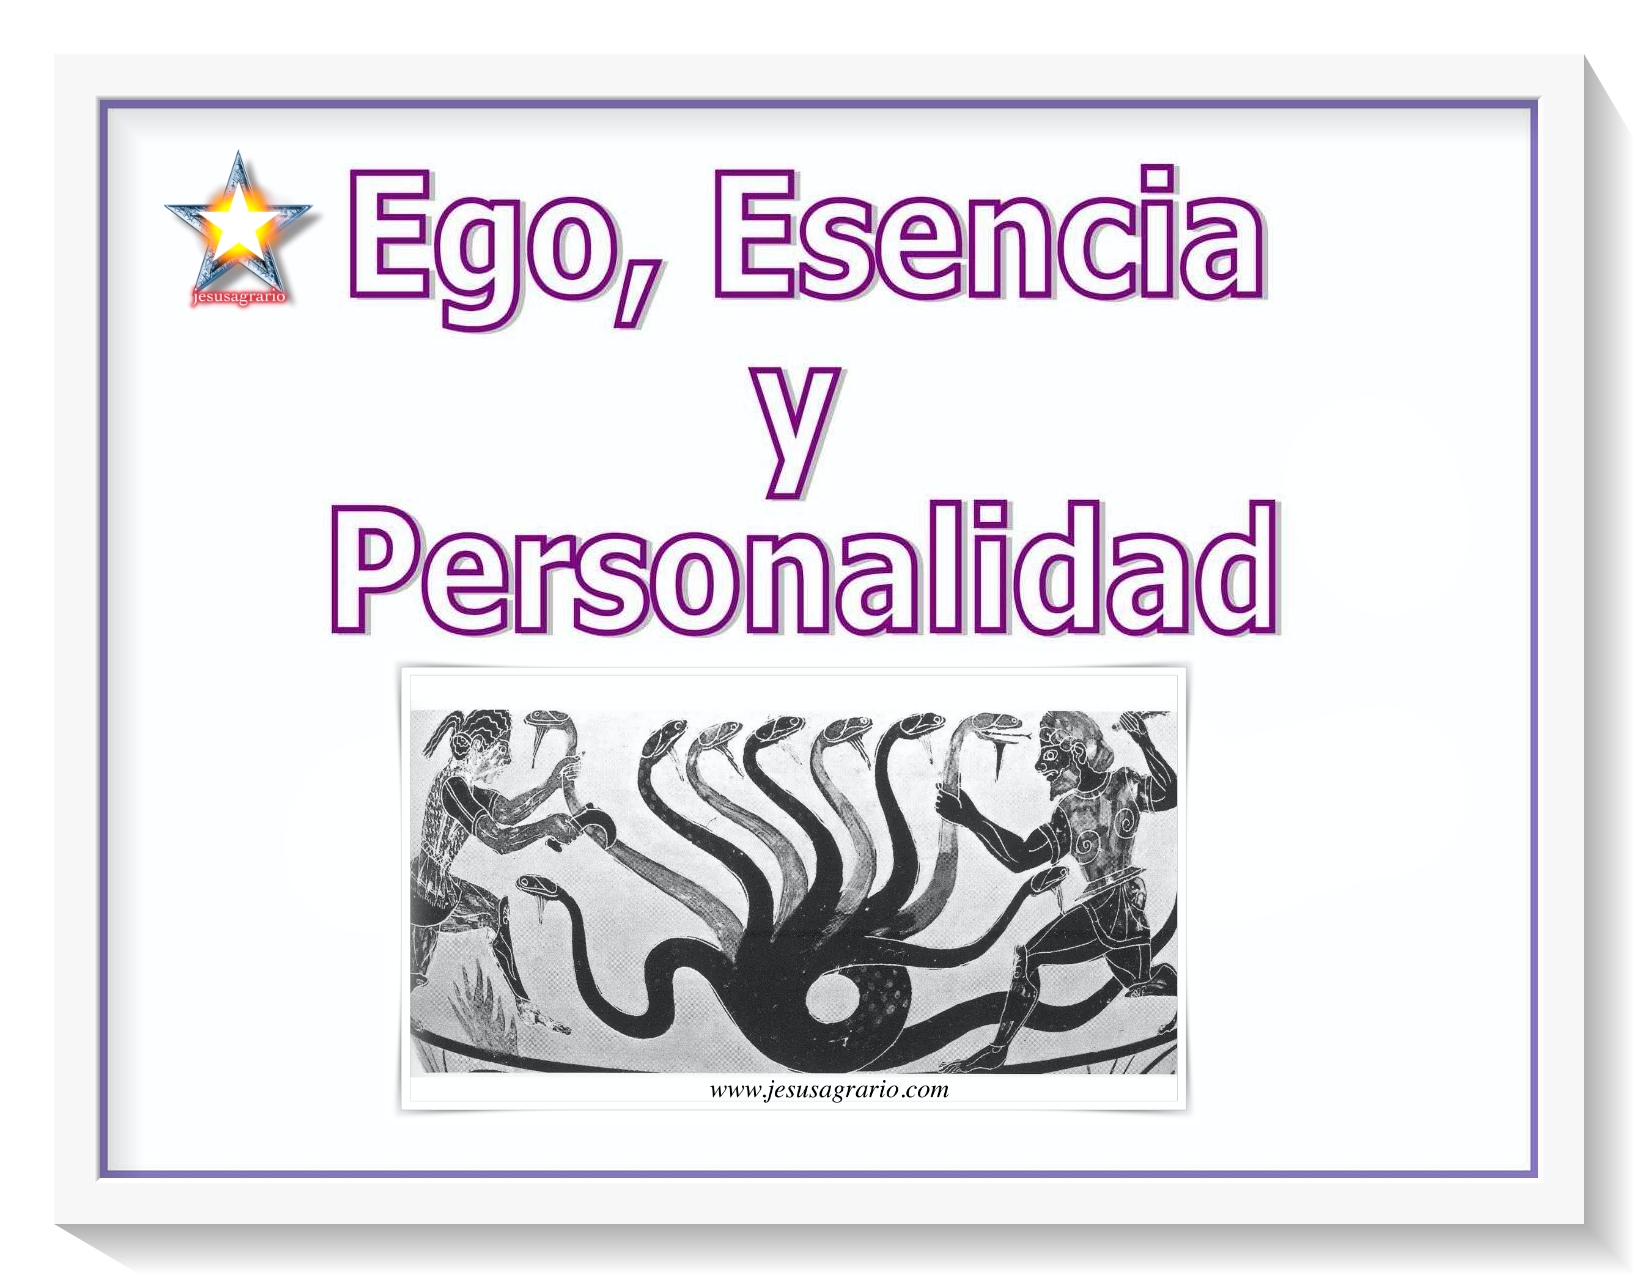 Ego esencia y personalidad